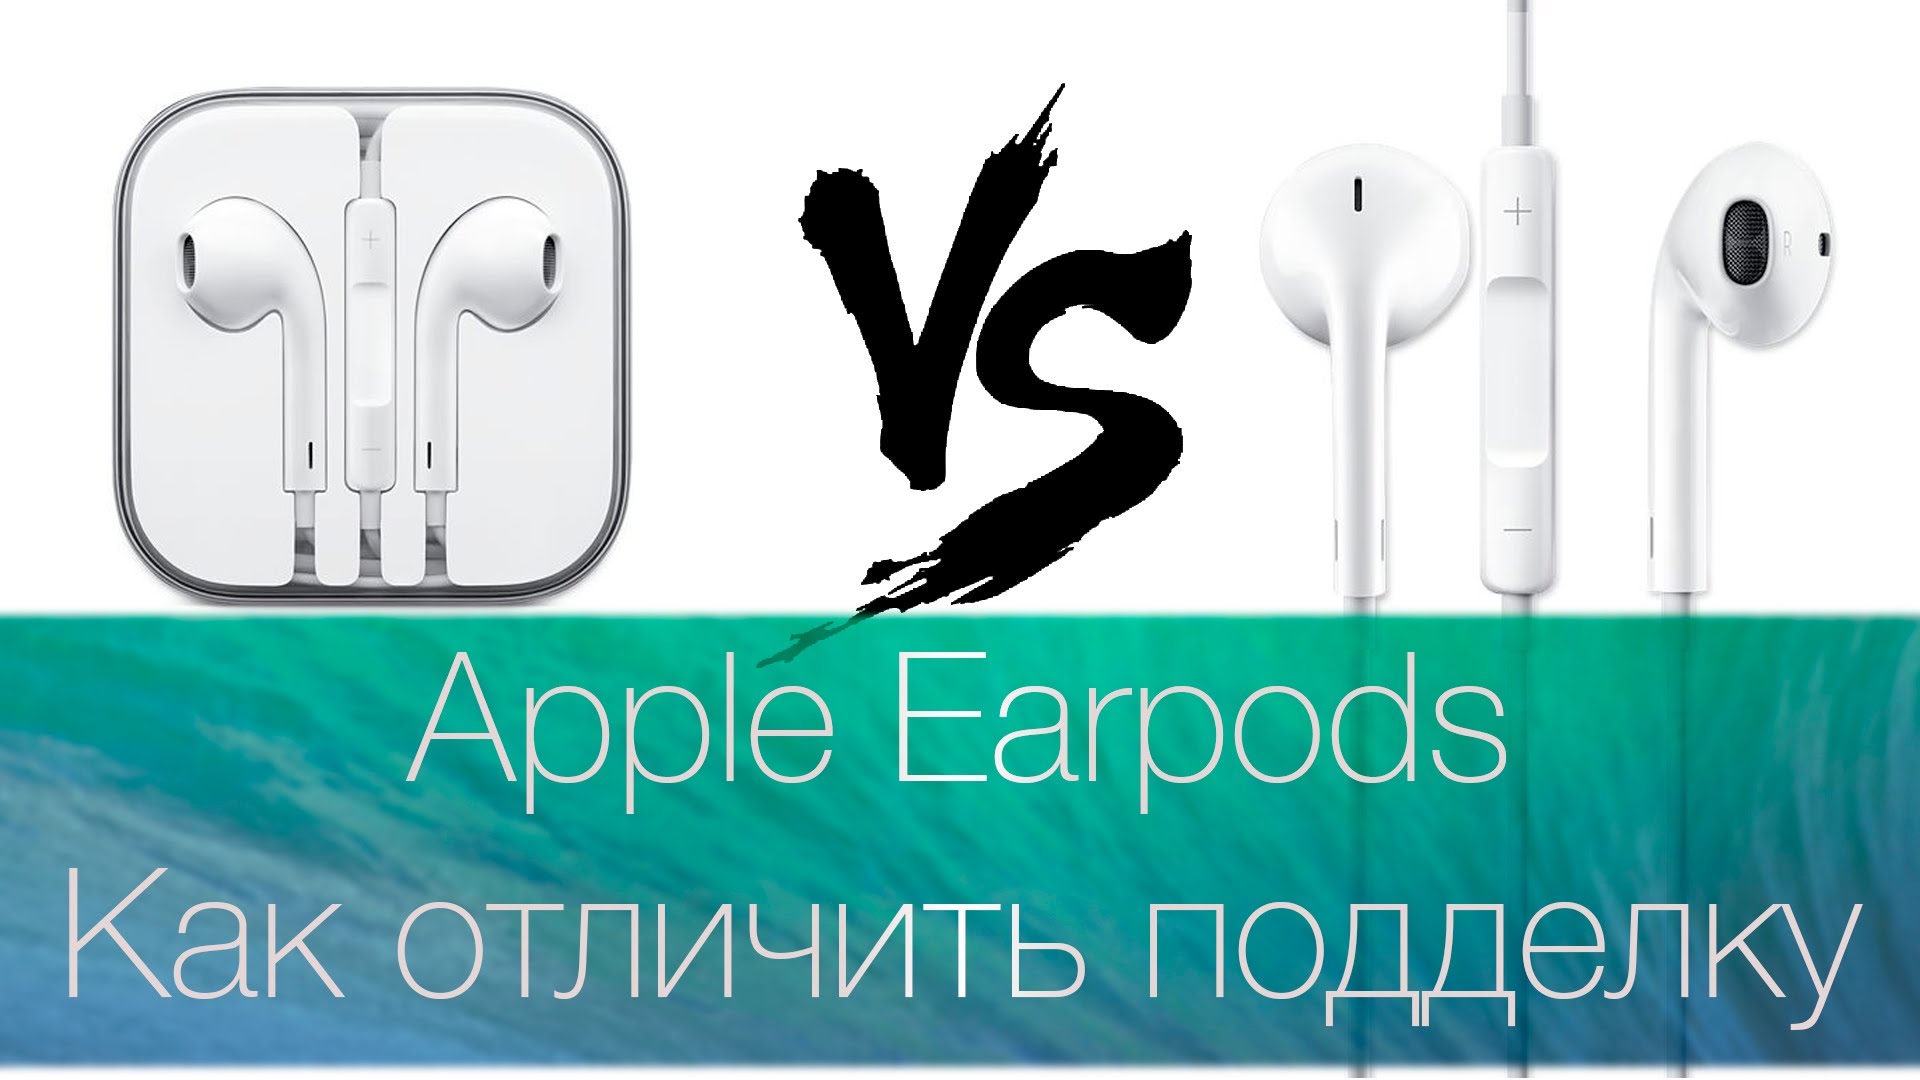 Чем отличаются аирподс 2. Как отличить Earpods. Как отличить Apple Earpods.